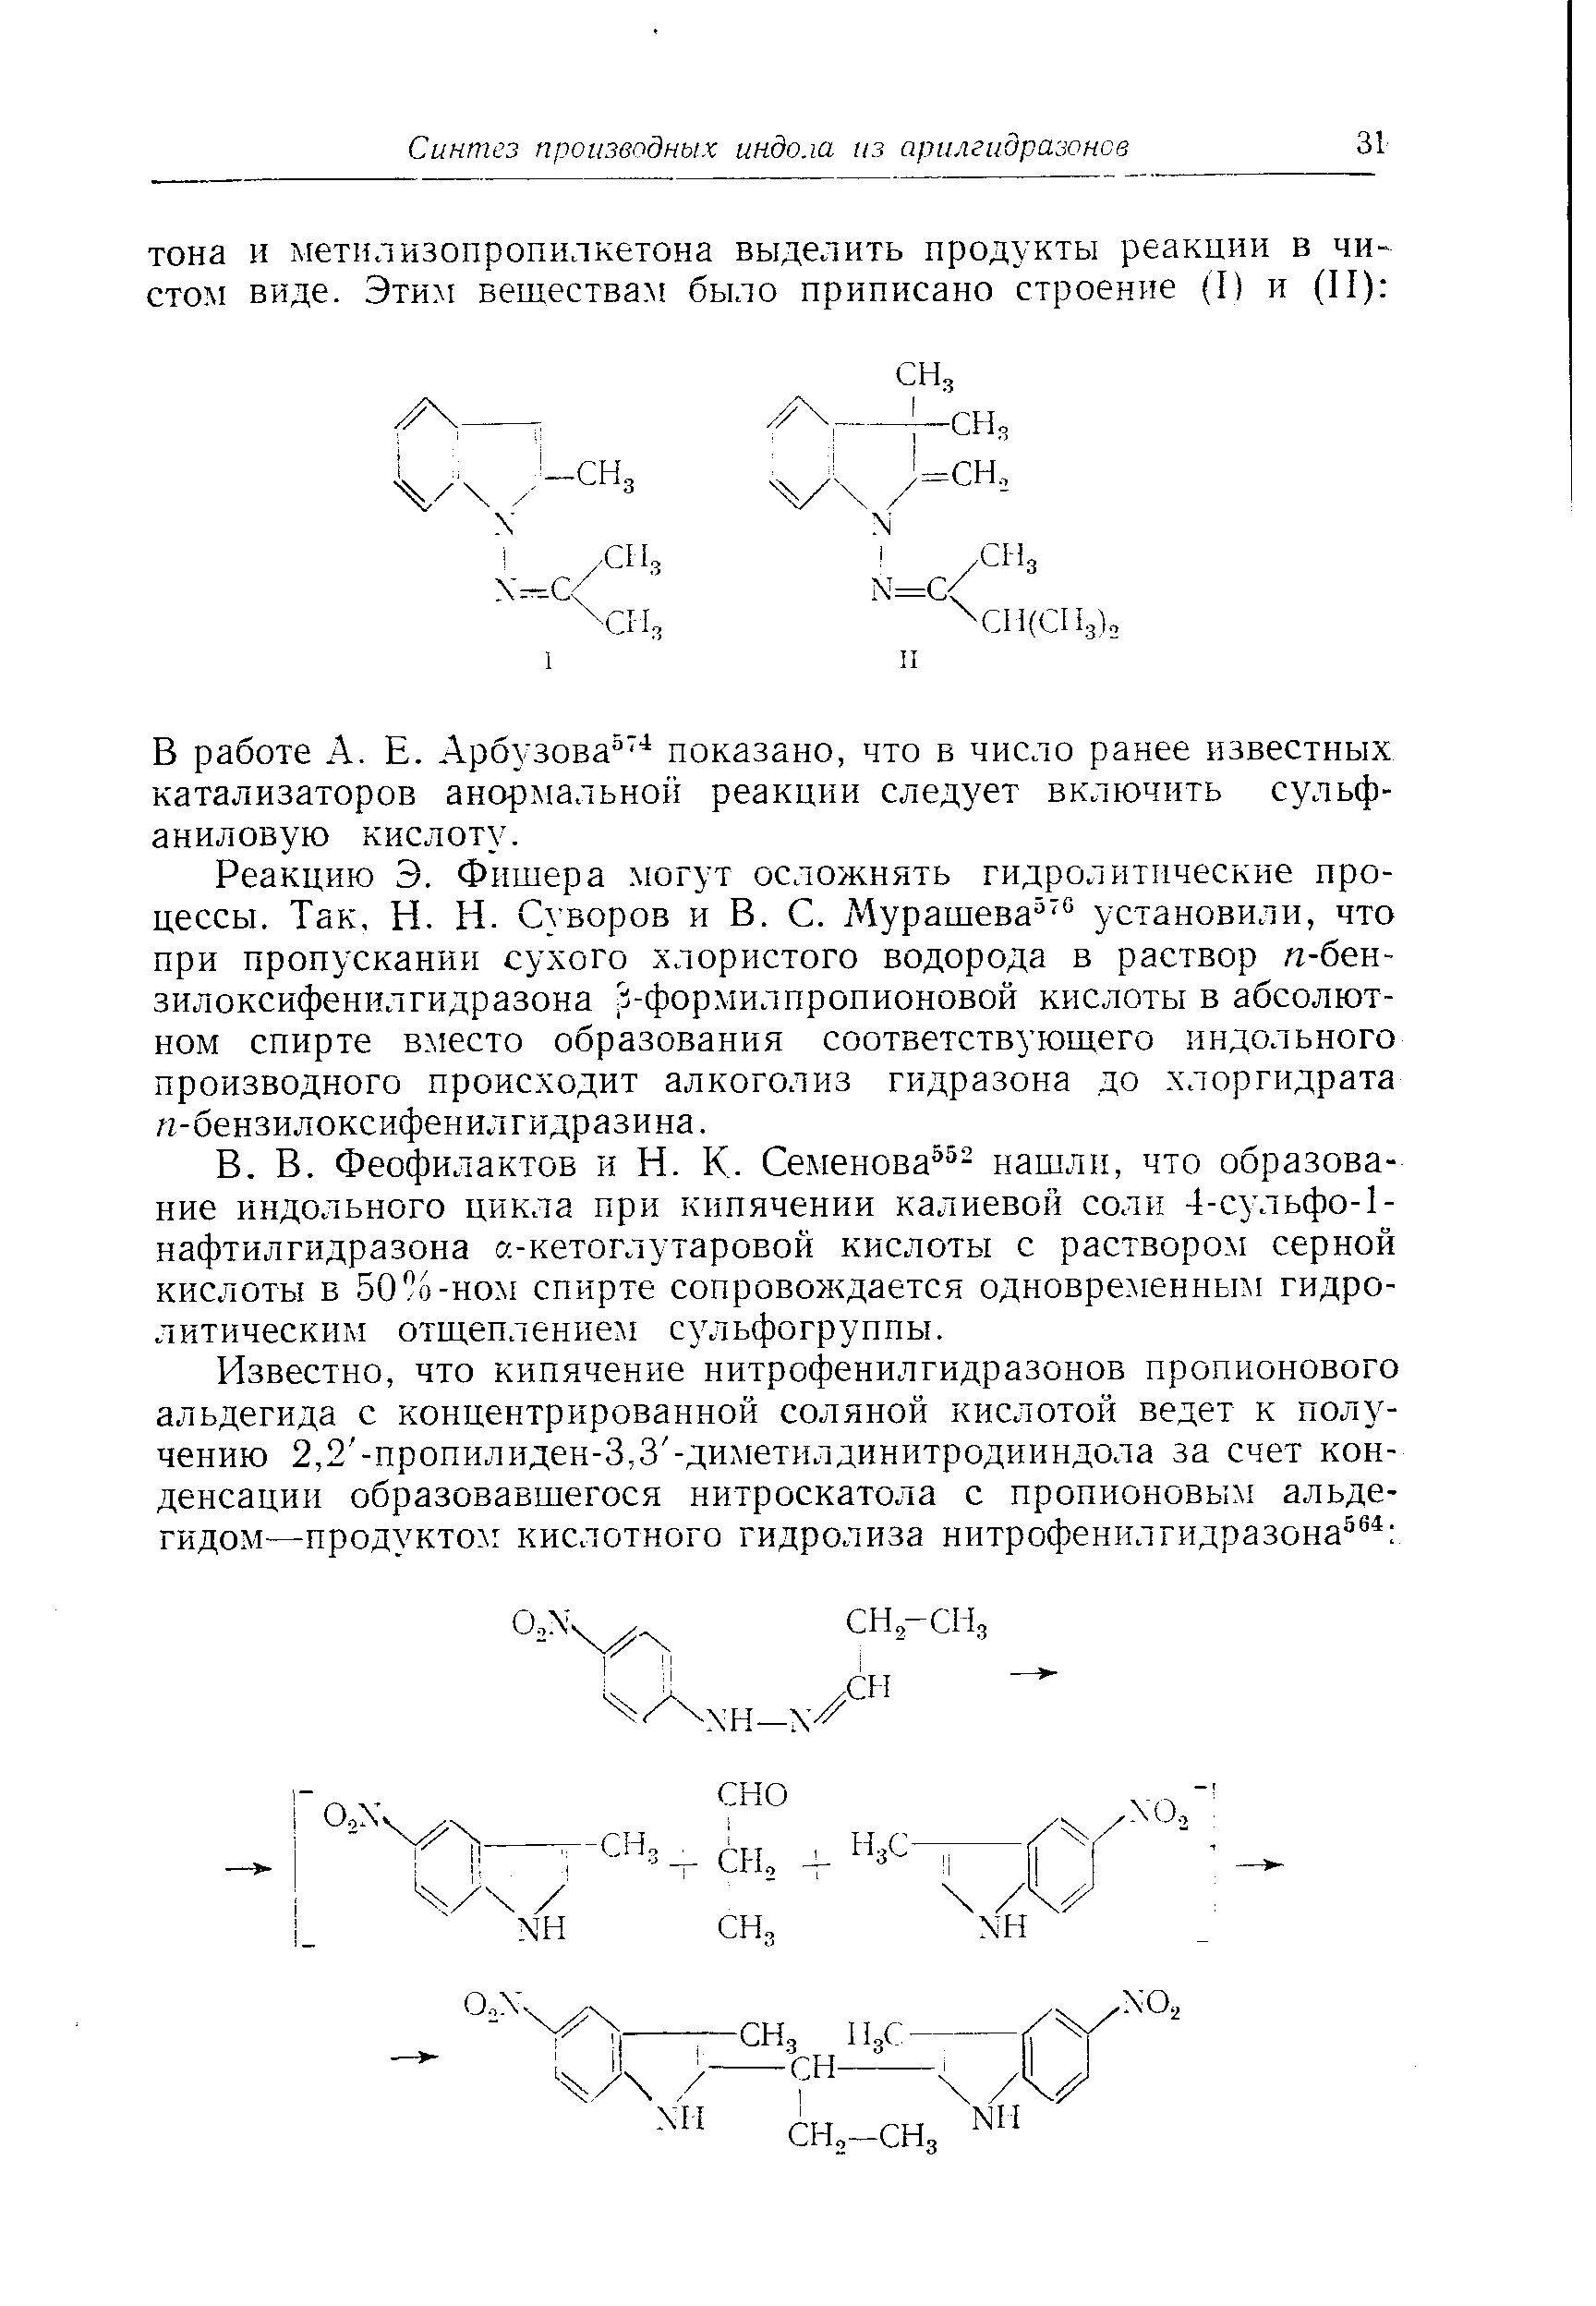 Феофилактов и Н. К. Семенова - нашли, что образование индольного цикла при кипячении калиевой соли 4-сульфо-1-нафтилгидразона а-кетоглутаровой кислоты с раствором серной кислоты в 50 о-ном спирте сопровождается одновременным гидролитическим отщеплением сульфогруппы.